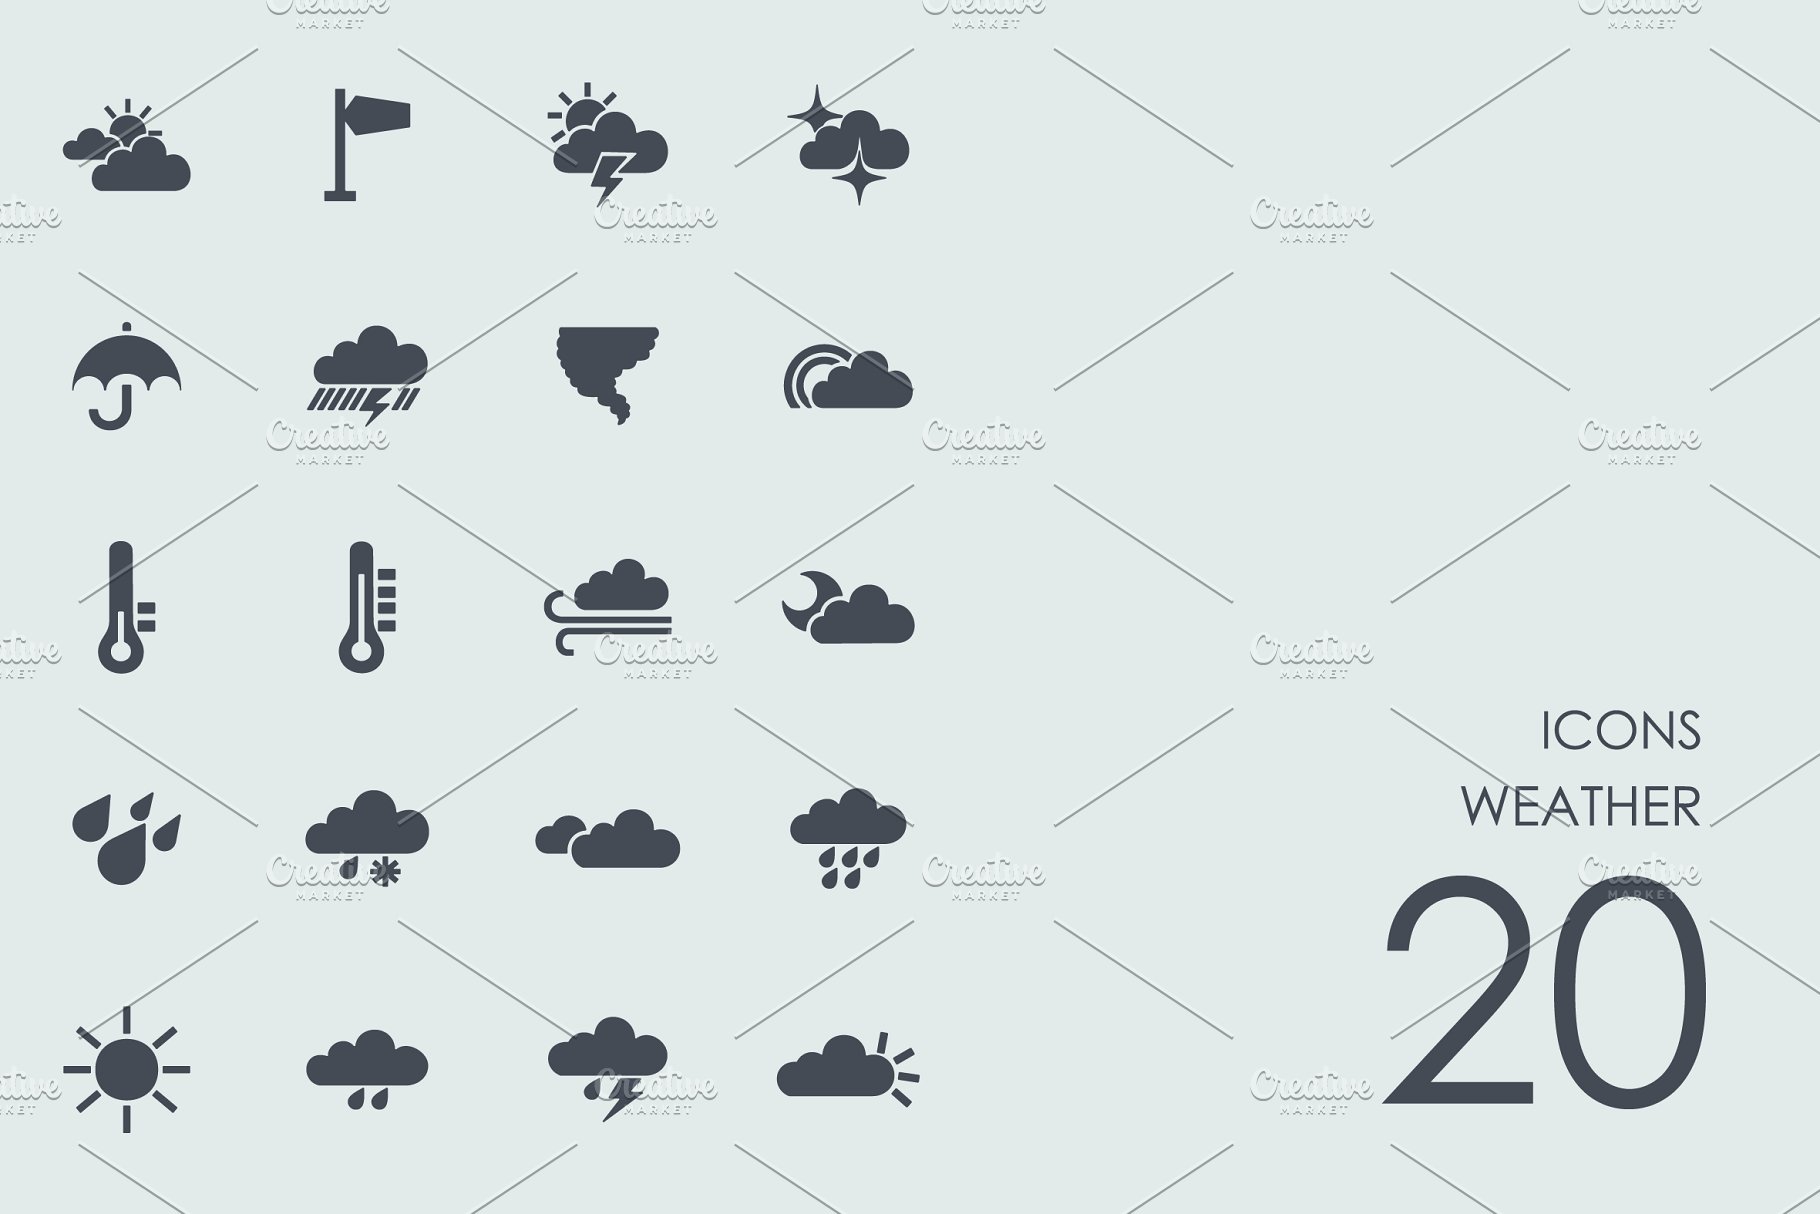 扁平化天气图标套装 Weather icons #91561